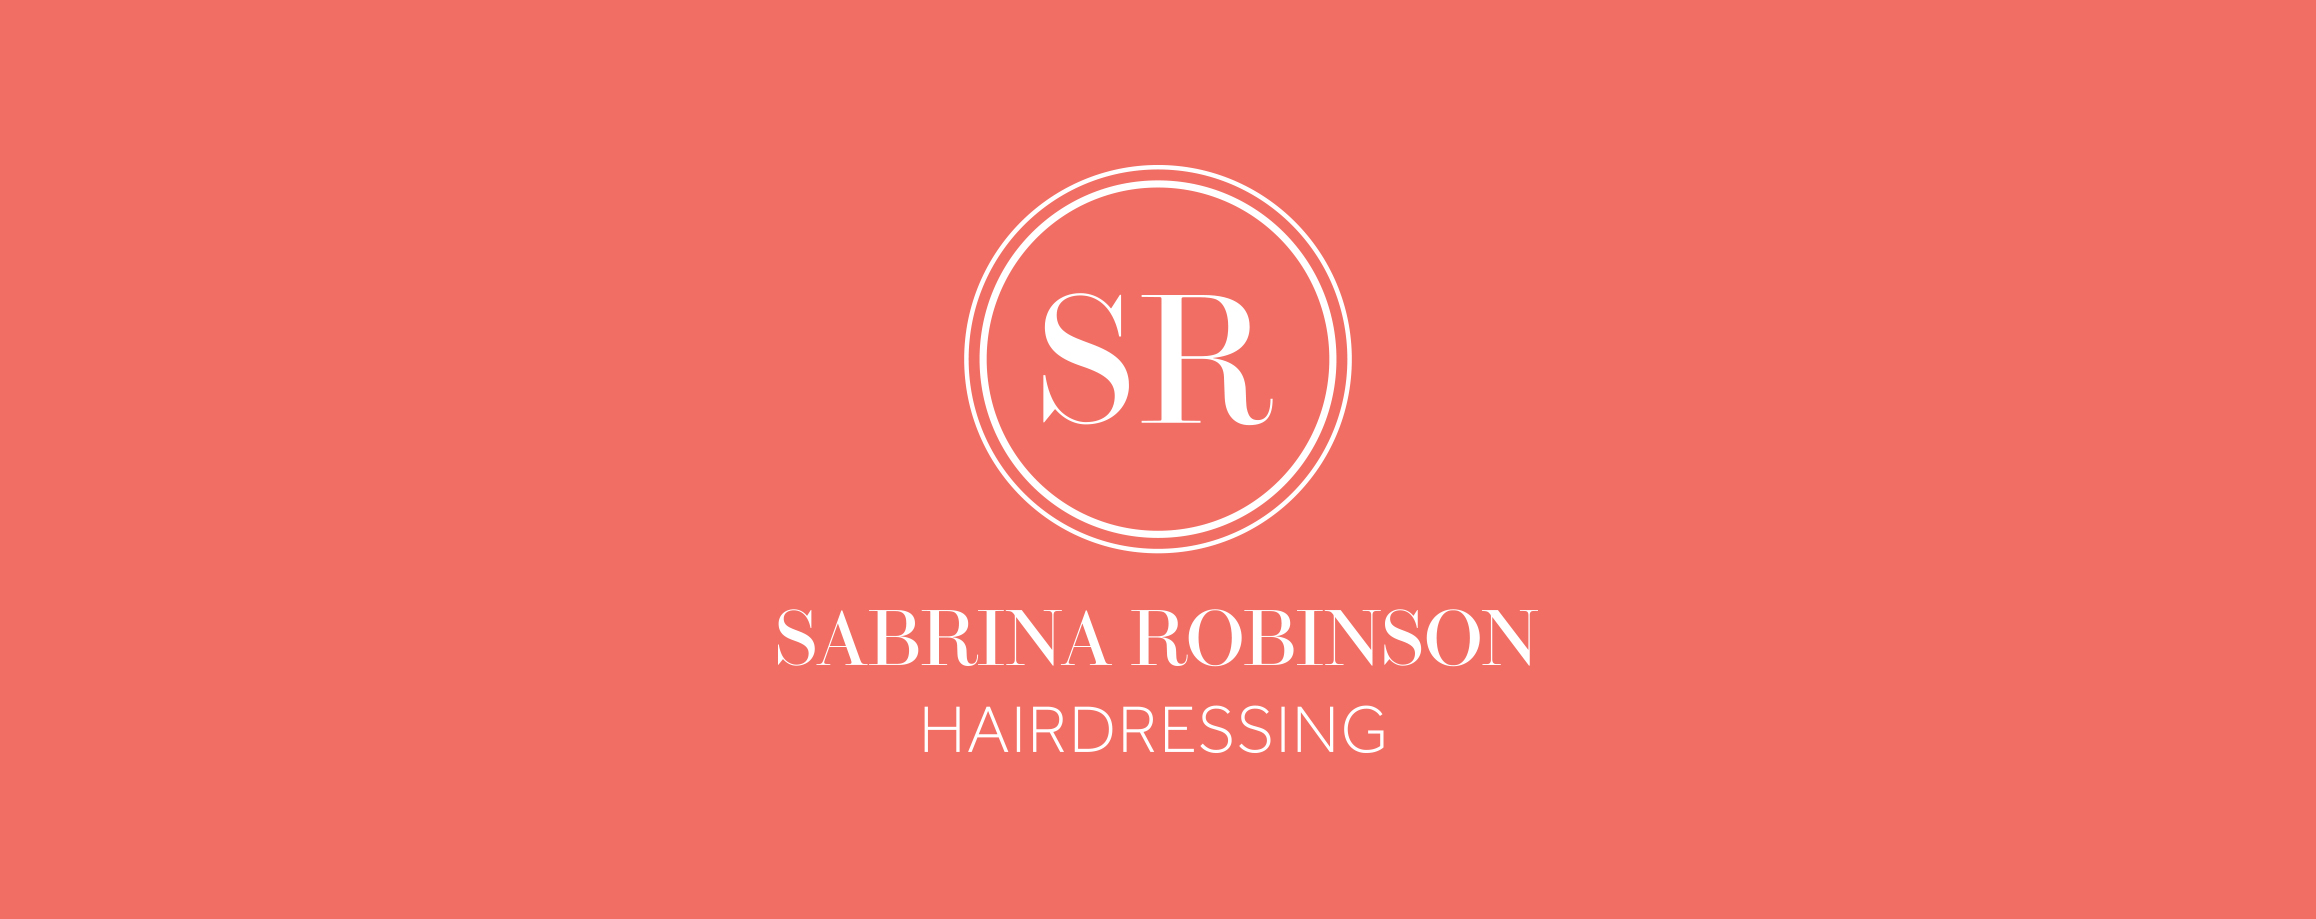 sr hairdressing logo